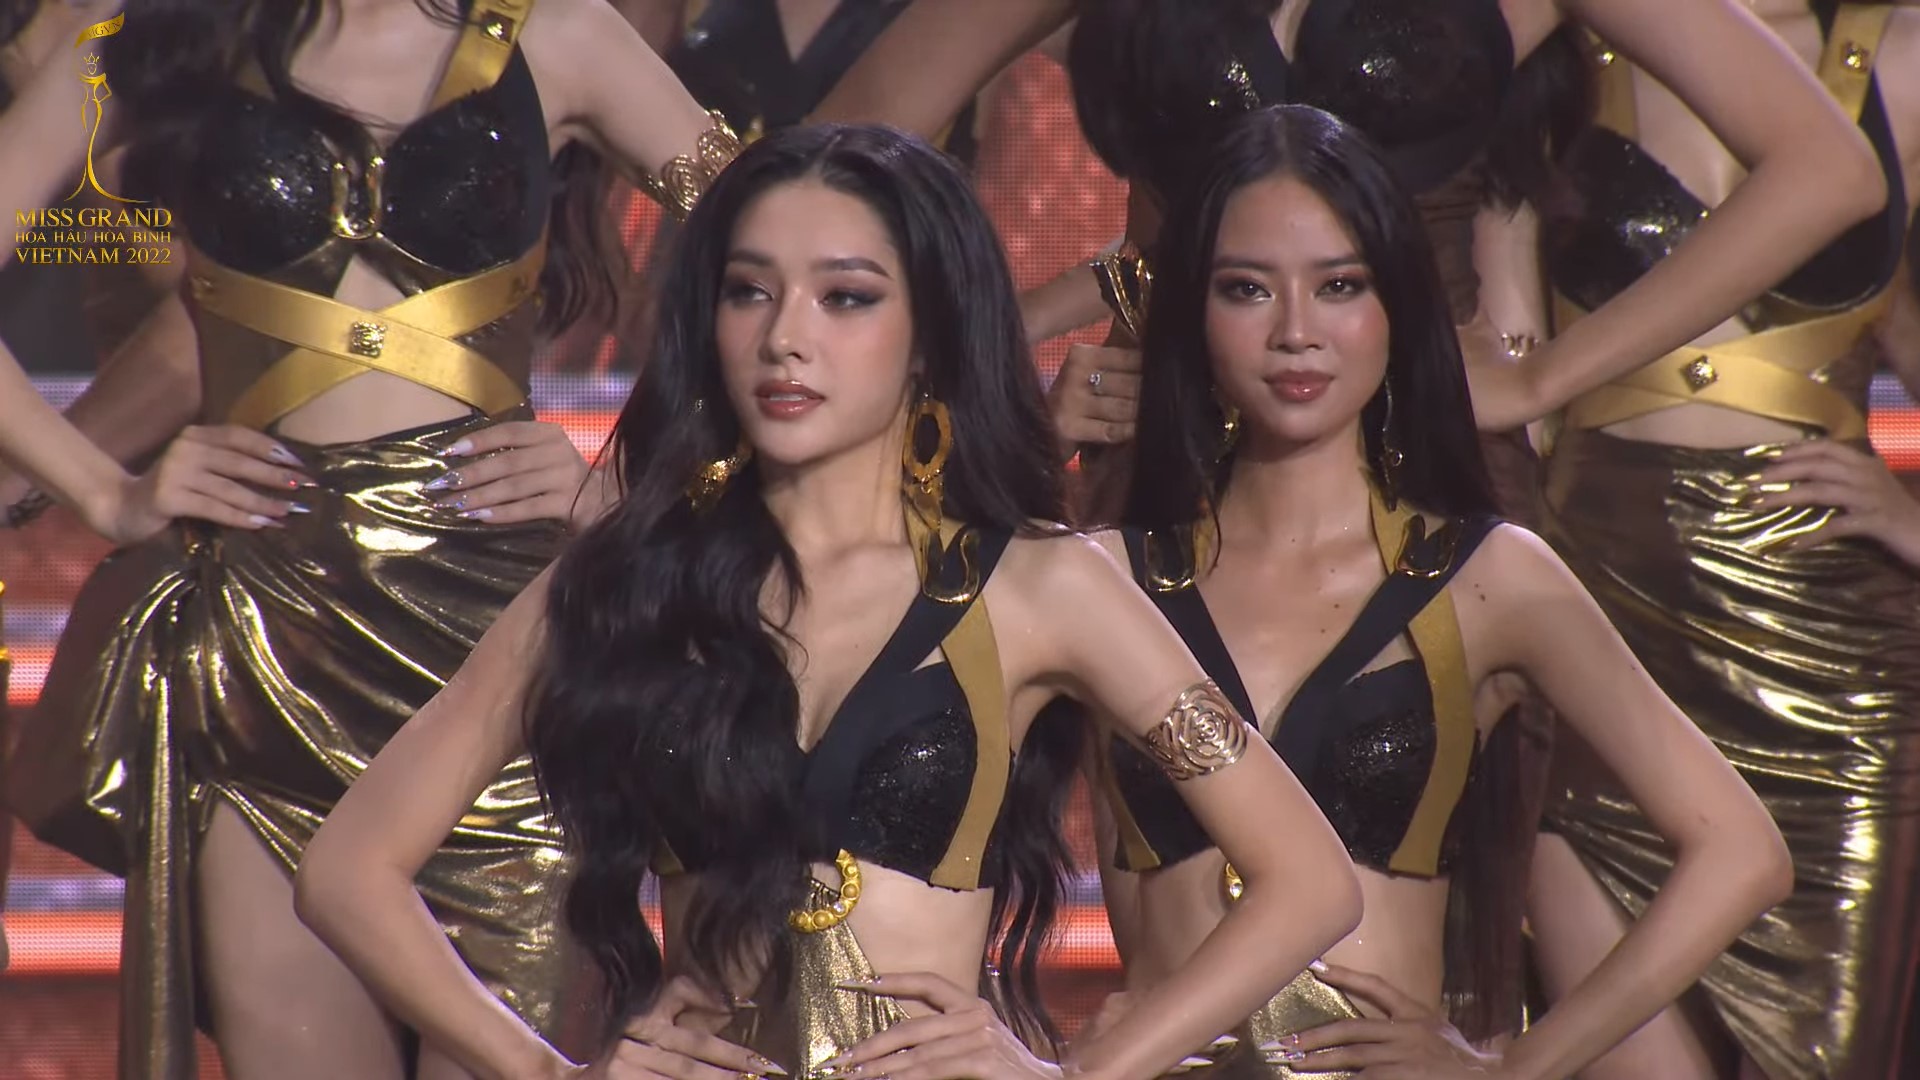 Cô gái Thái Bình không lọt top 10 Miss Grand VN nhưng vẫn 'gây bão' MXH vì quá đẹp - 1